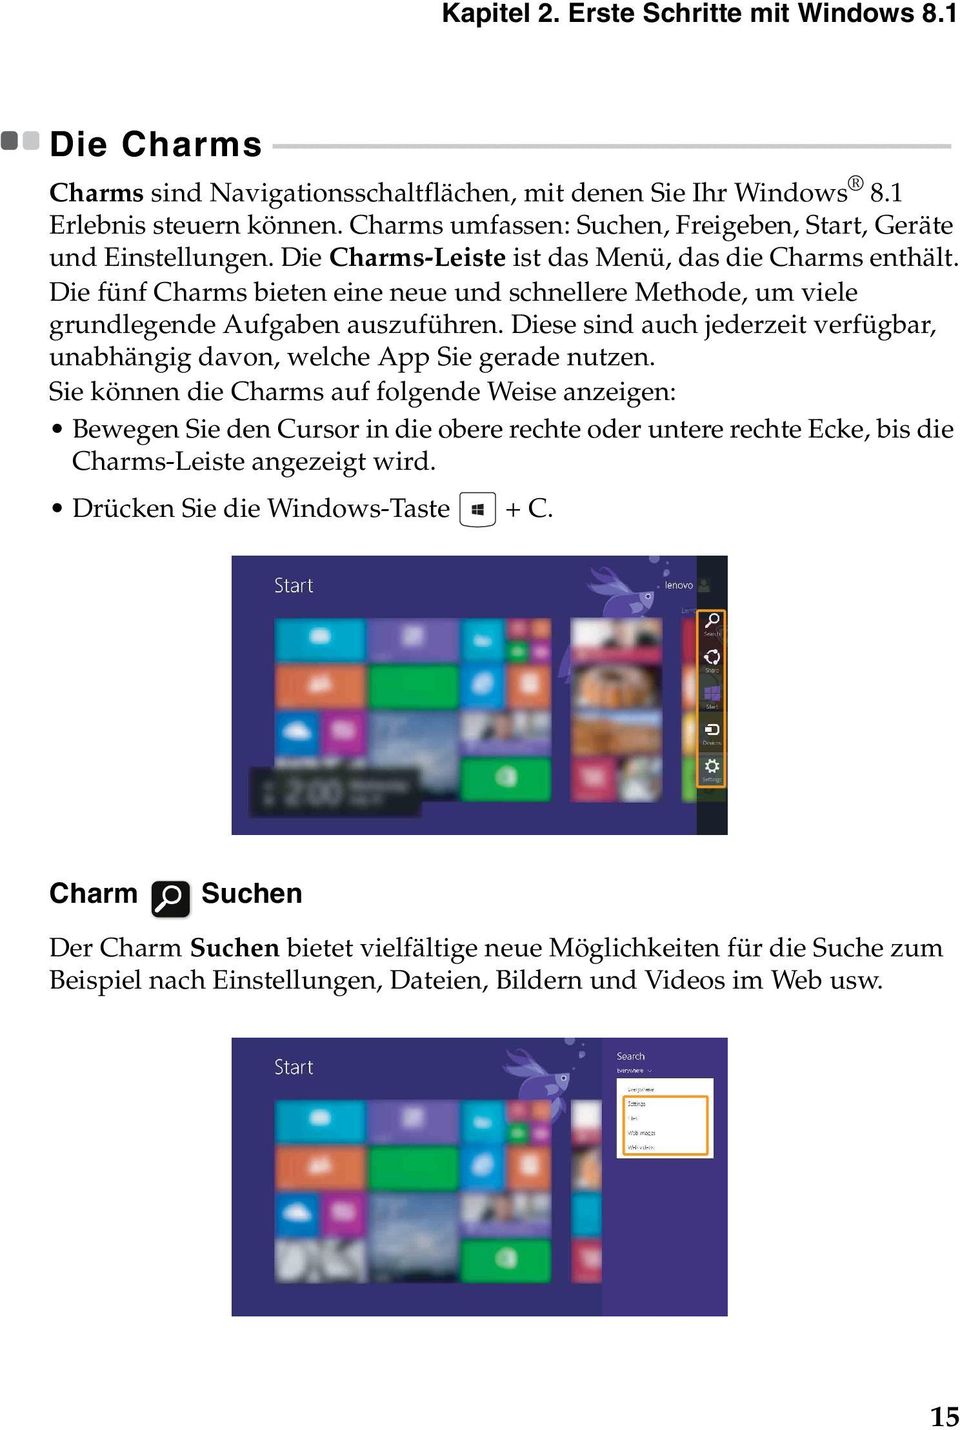 Charms sind Navigationsschaltflächen, mit denen Sie Ihr Windows 8.1 Erlebnis steuern können. Charms umfassen: Suchen, Freigeben, Start, Geräte und Einstellungen.